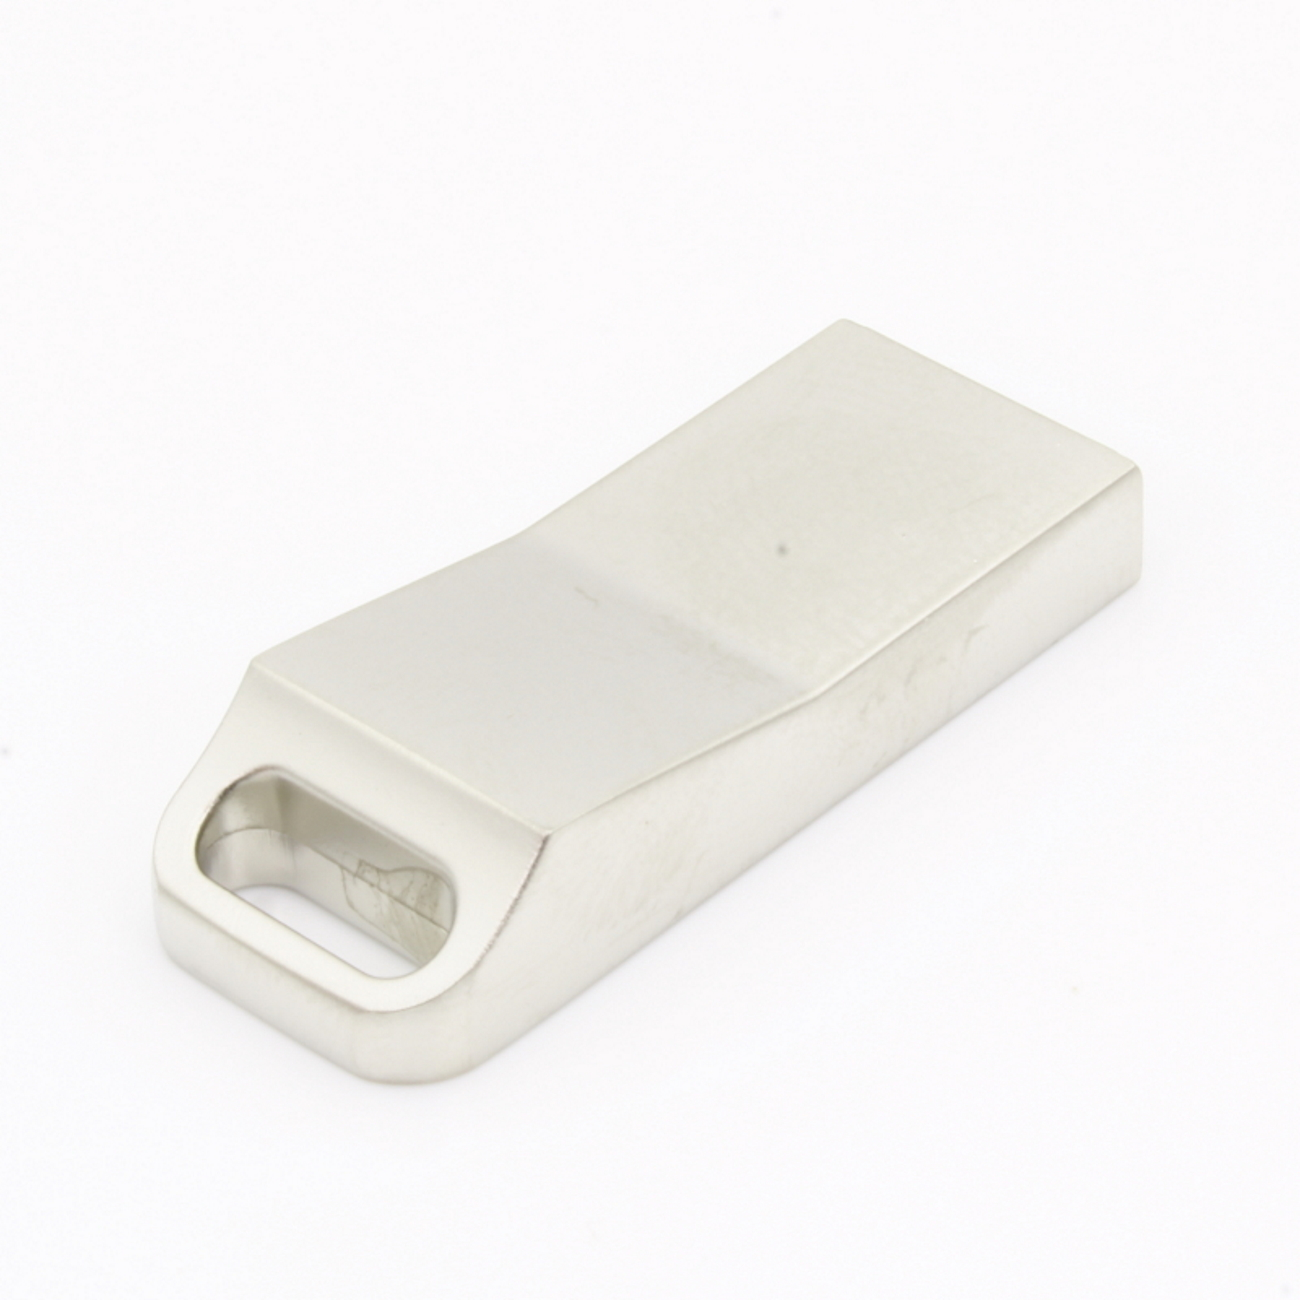 USB GERMANY (Silber, GB) USB-Stick ®Metall 128 ME15